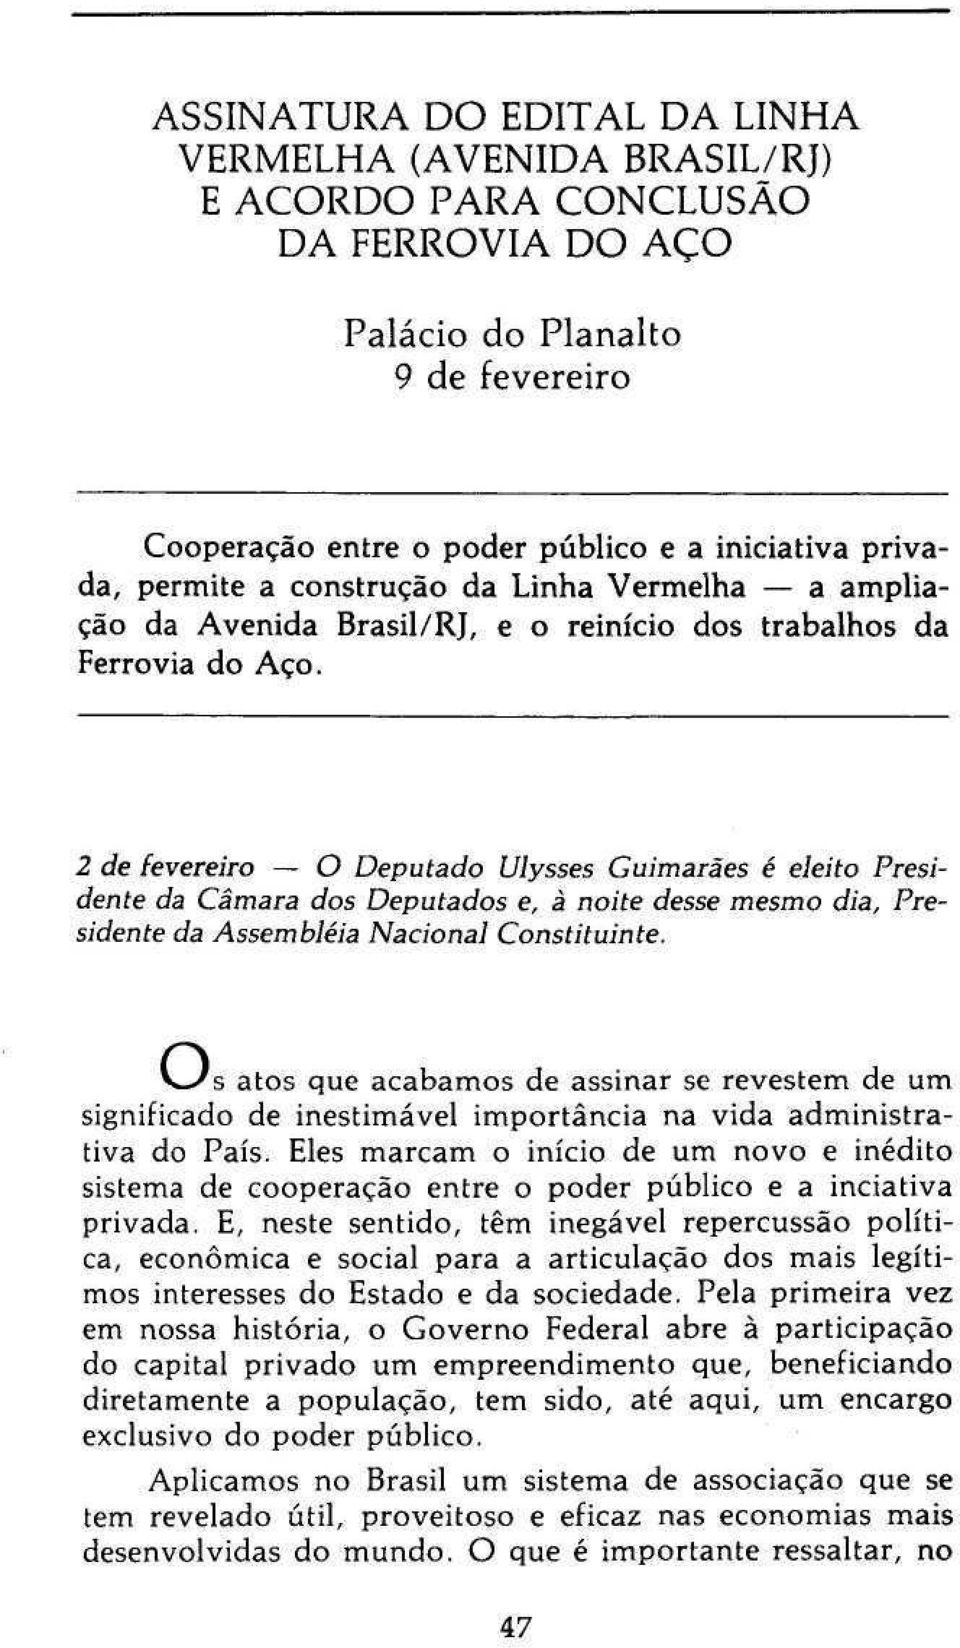 2 de fevereiro O Deputado Ulysses Guimarães é eleito Presidente da Câmara dos Deputados e, à noite desse mesmo dia, Presidente da Assembléia Nacional Constituinte.